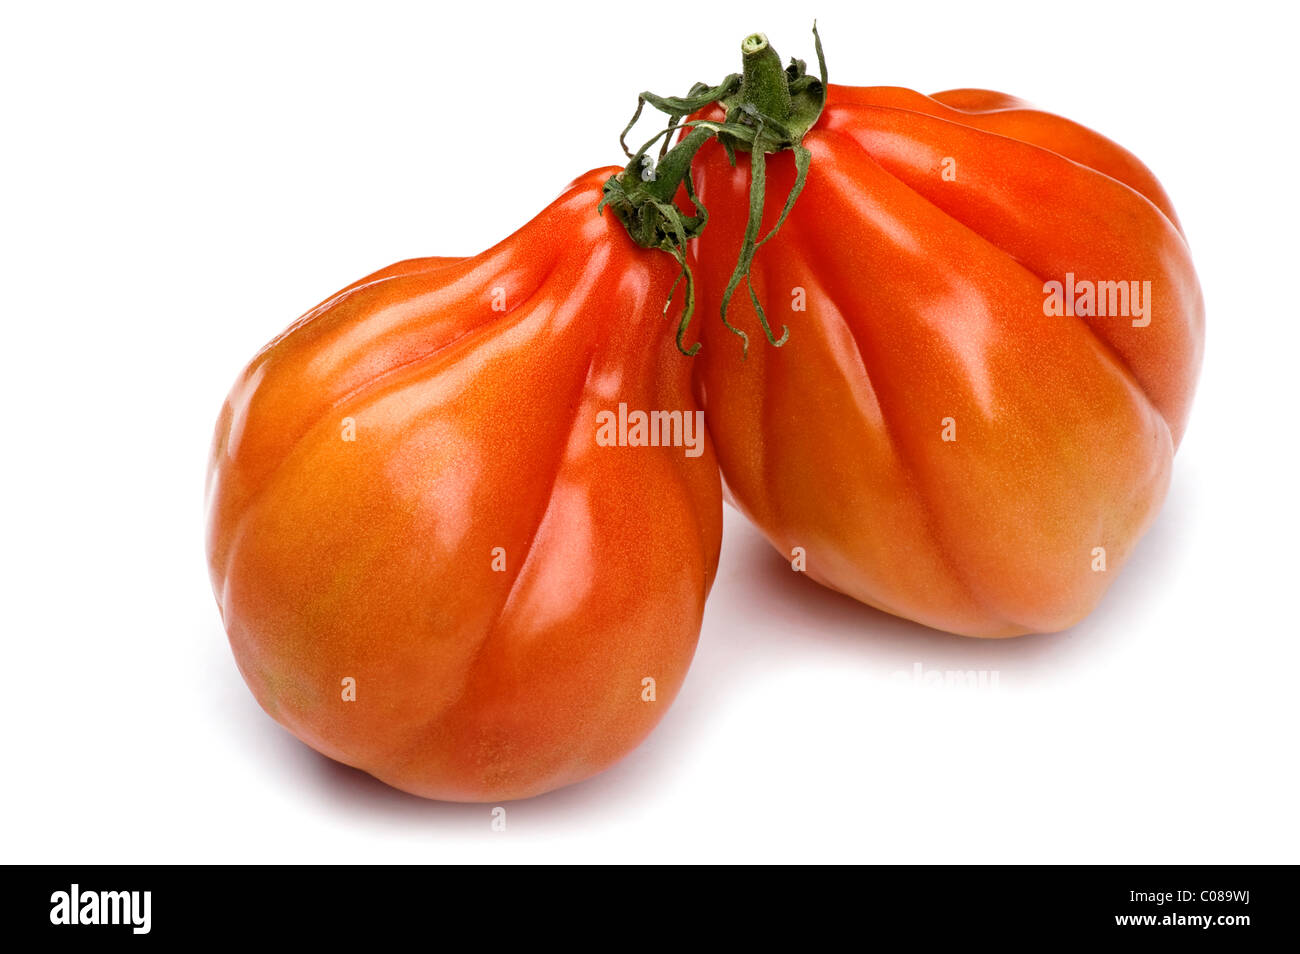 Objet sur blanc - tomate rouge alimentaire close up Banque D'Images